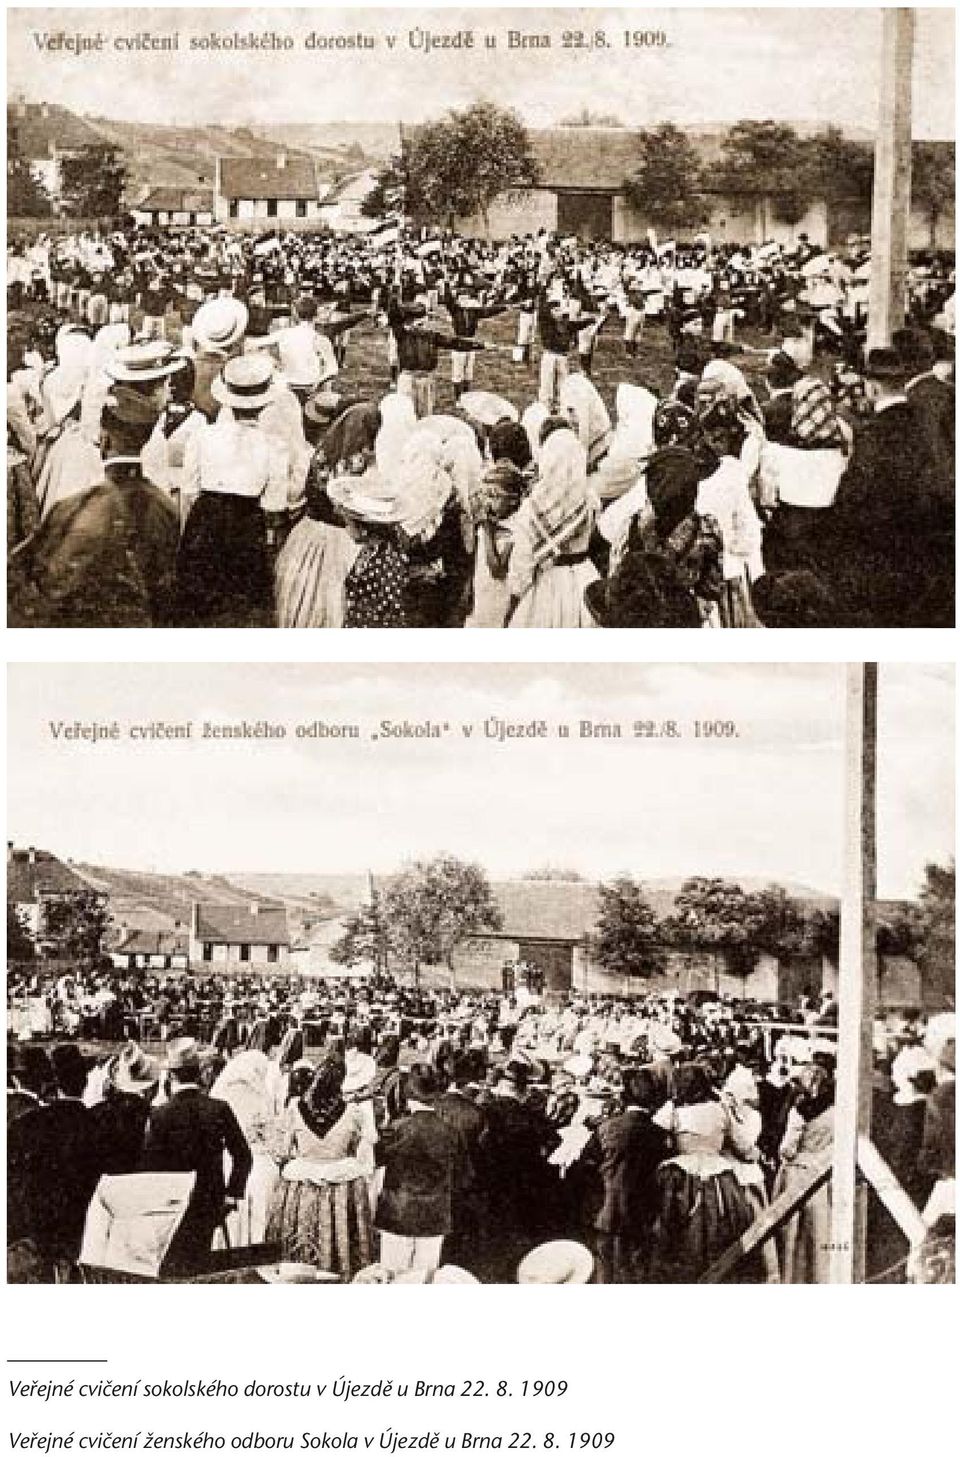 1909 Vefiejné cviãení Ïenského